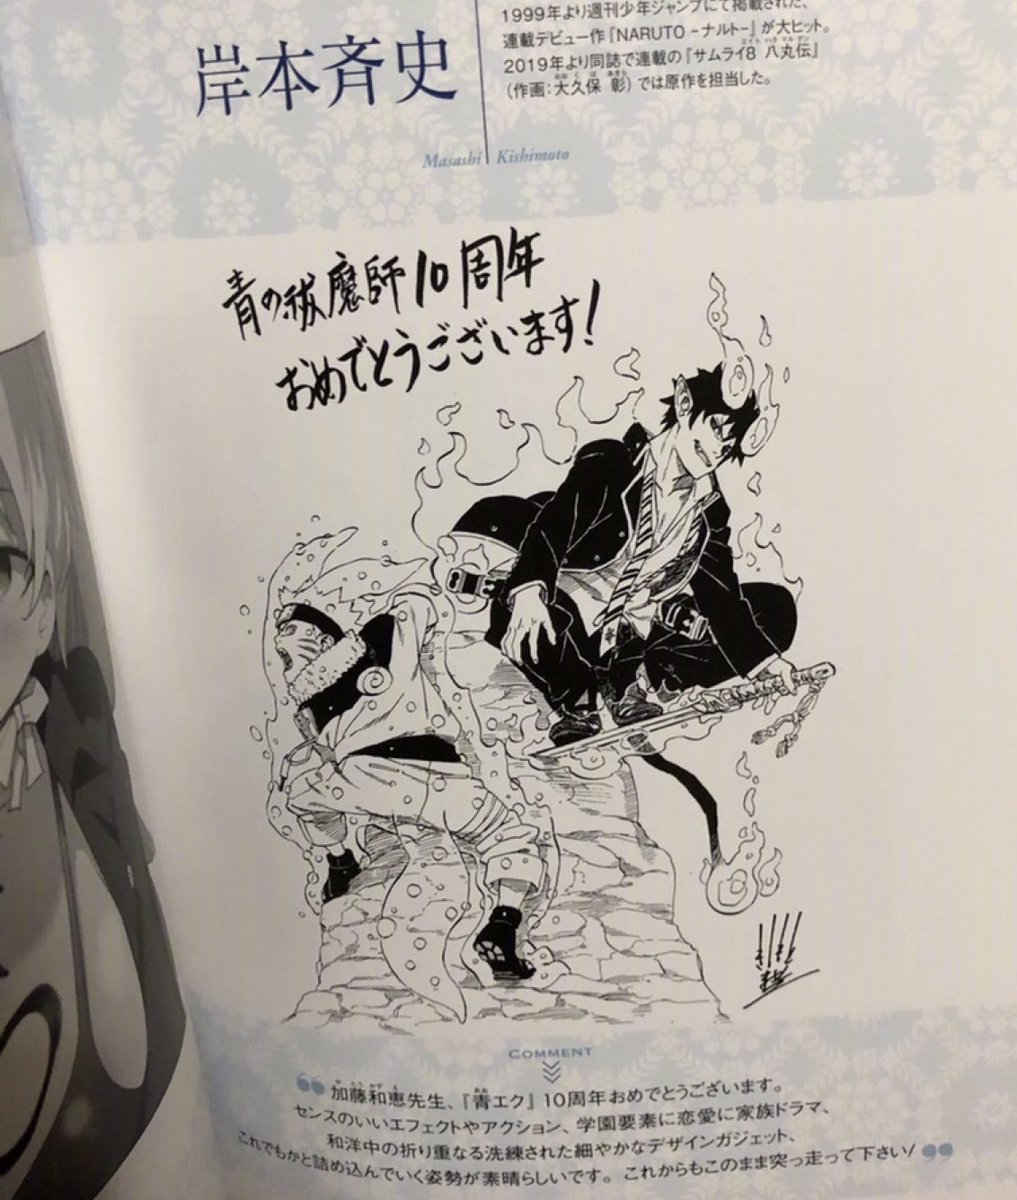 Narutoとサムライ8の作者 岸本斉史さんの最新絵 めちゃくちゃ上手い 画像あり 色々まとめ速報